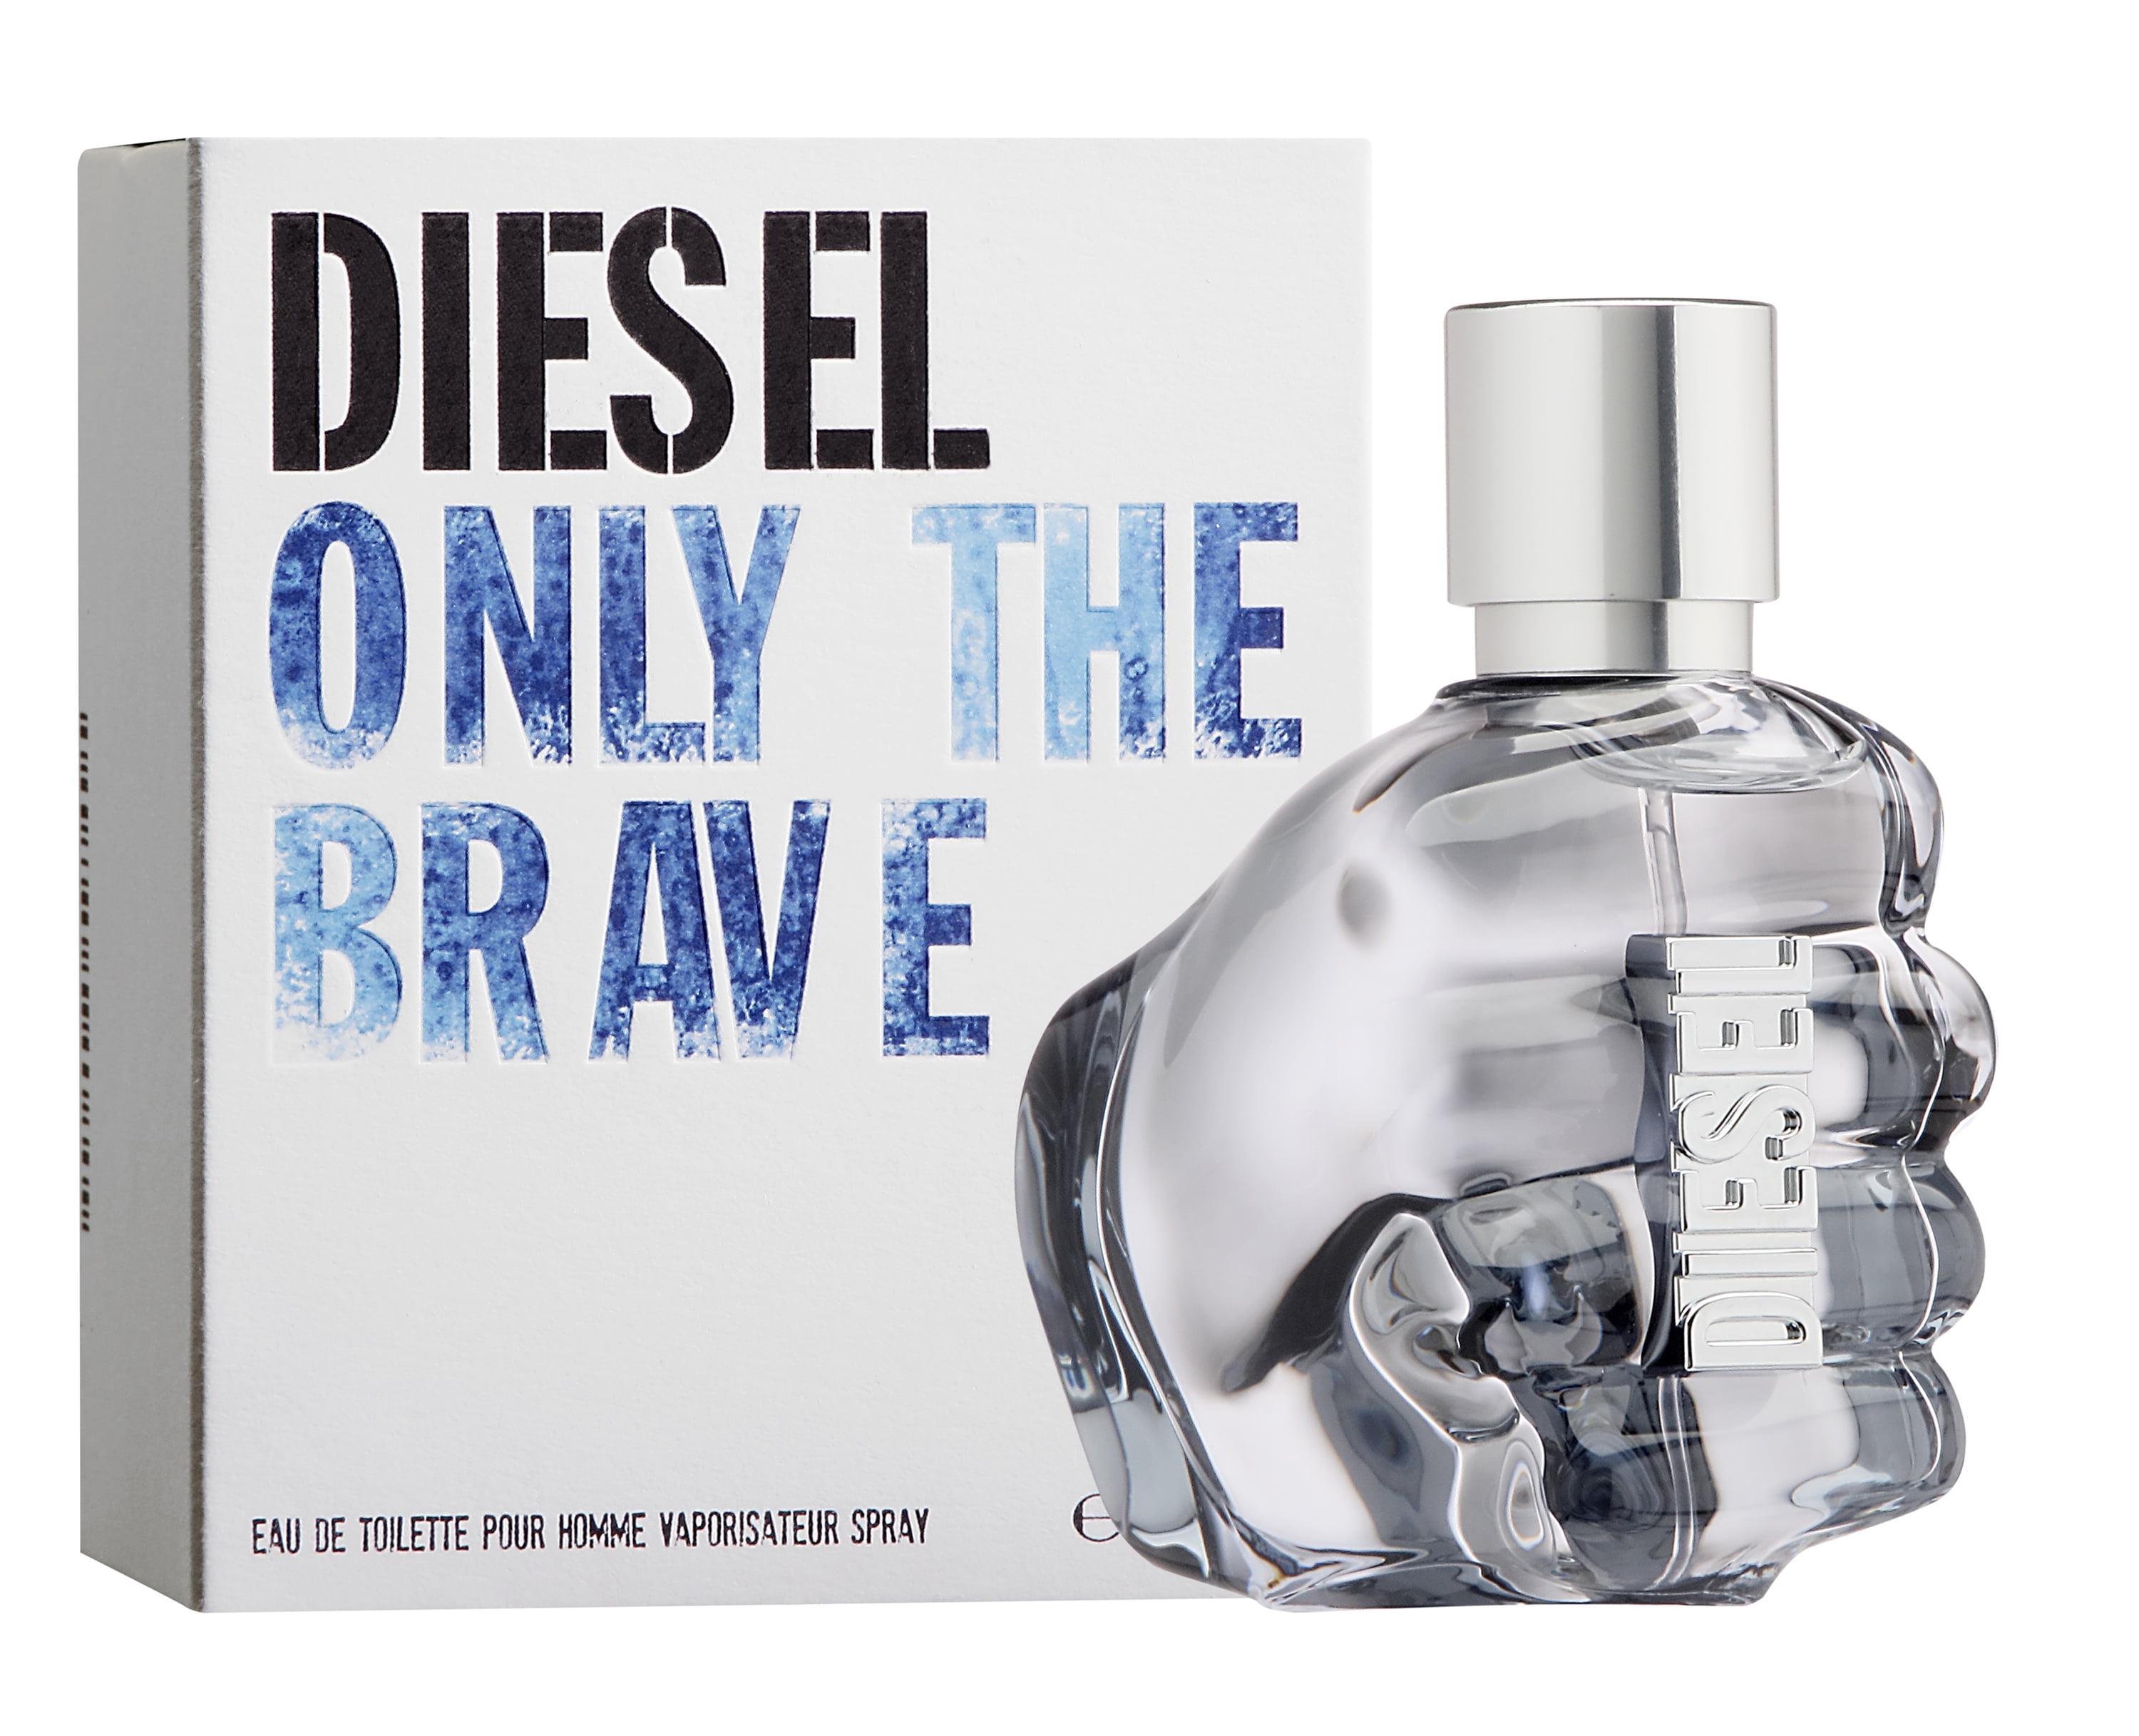 Diesel the Brave Eau de Cologne for Men, 1.7 Oz - Walmart.com